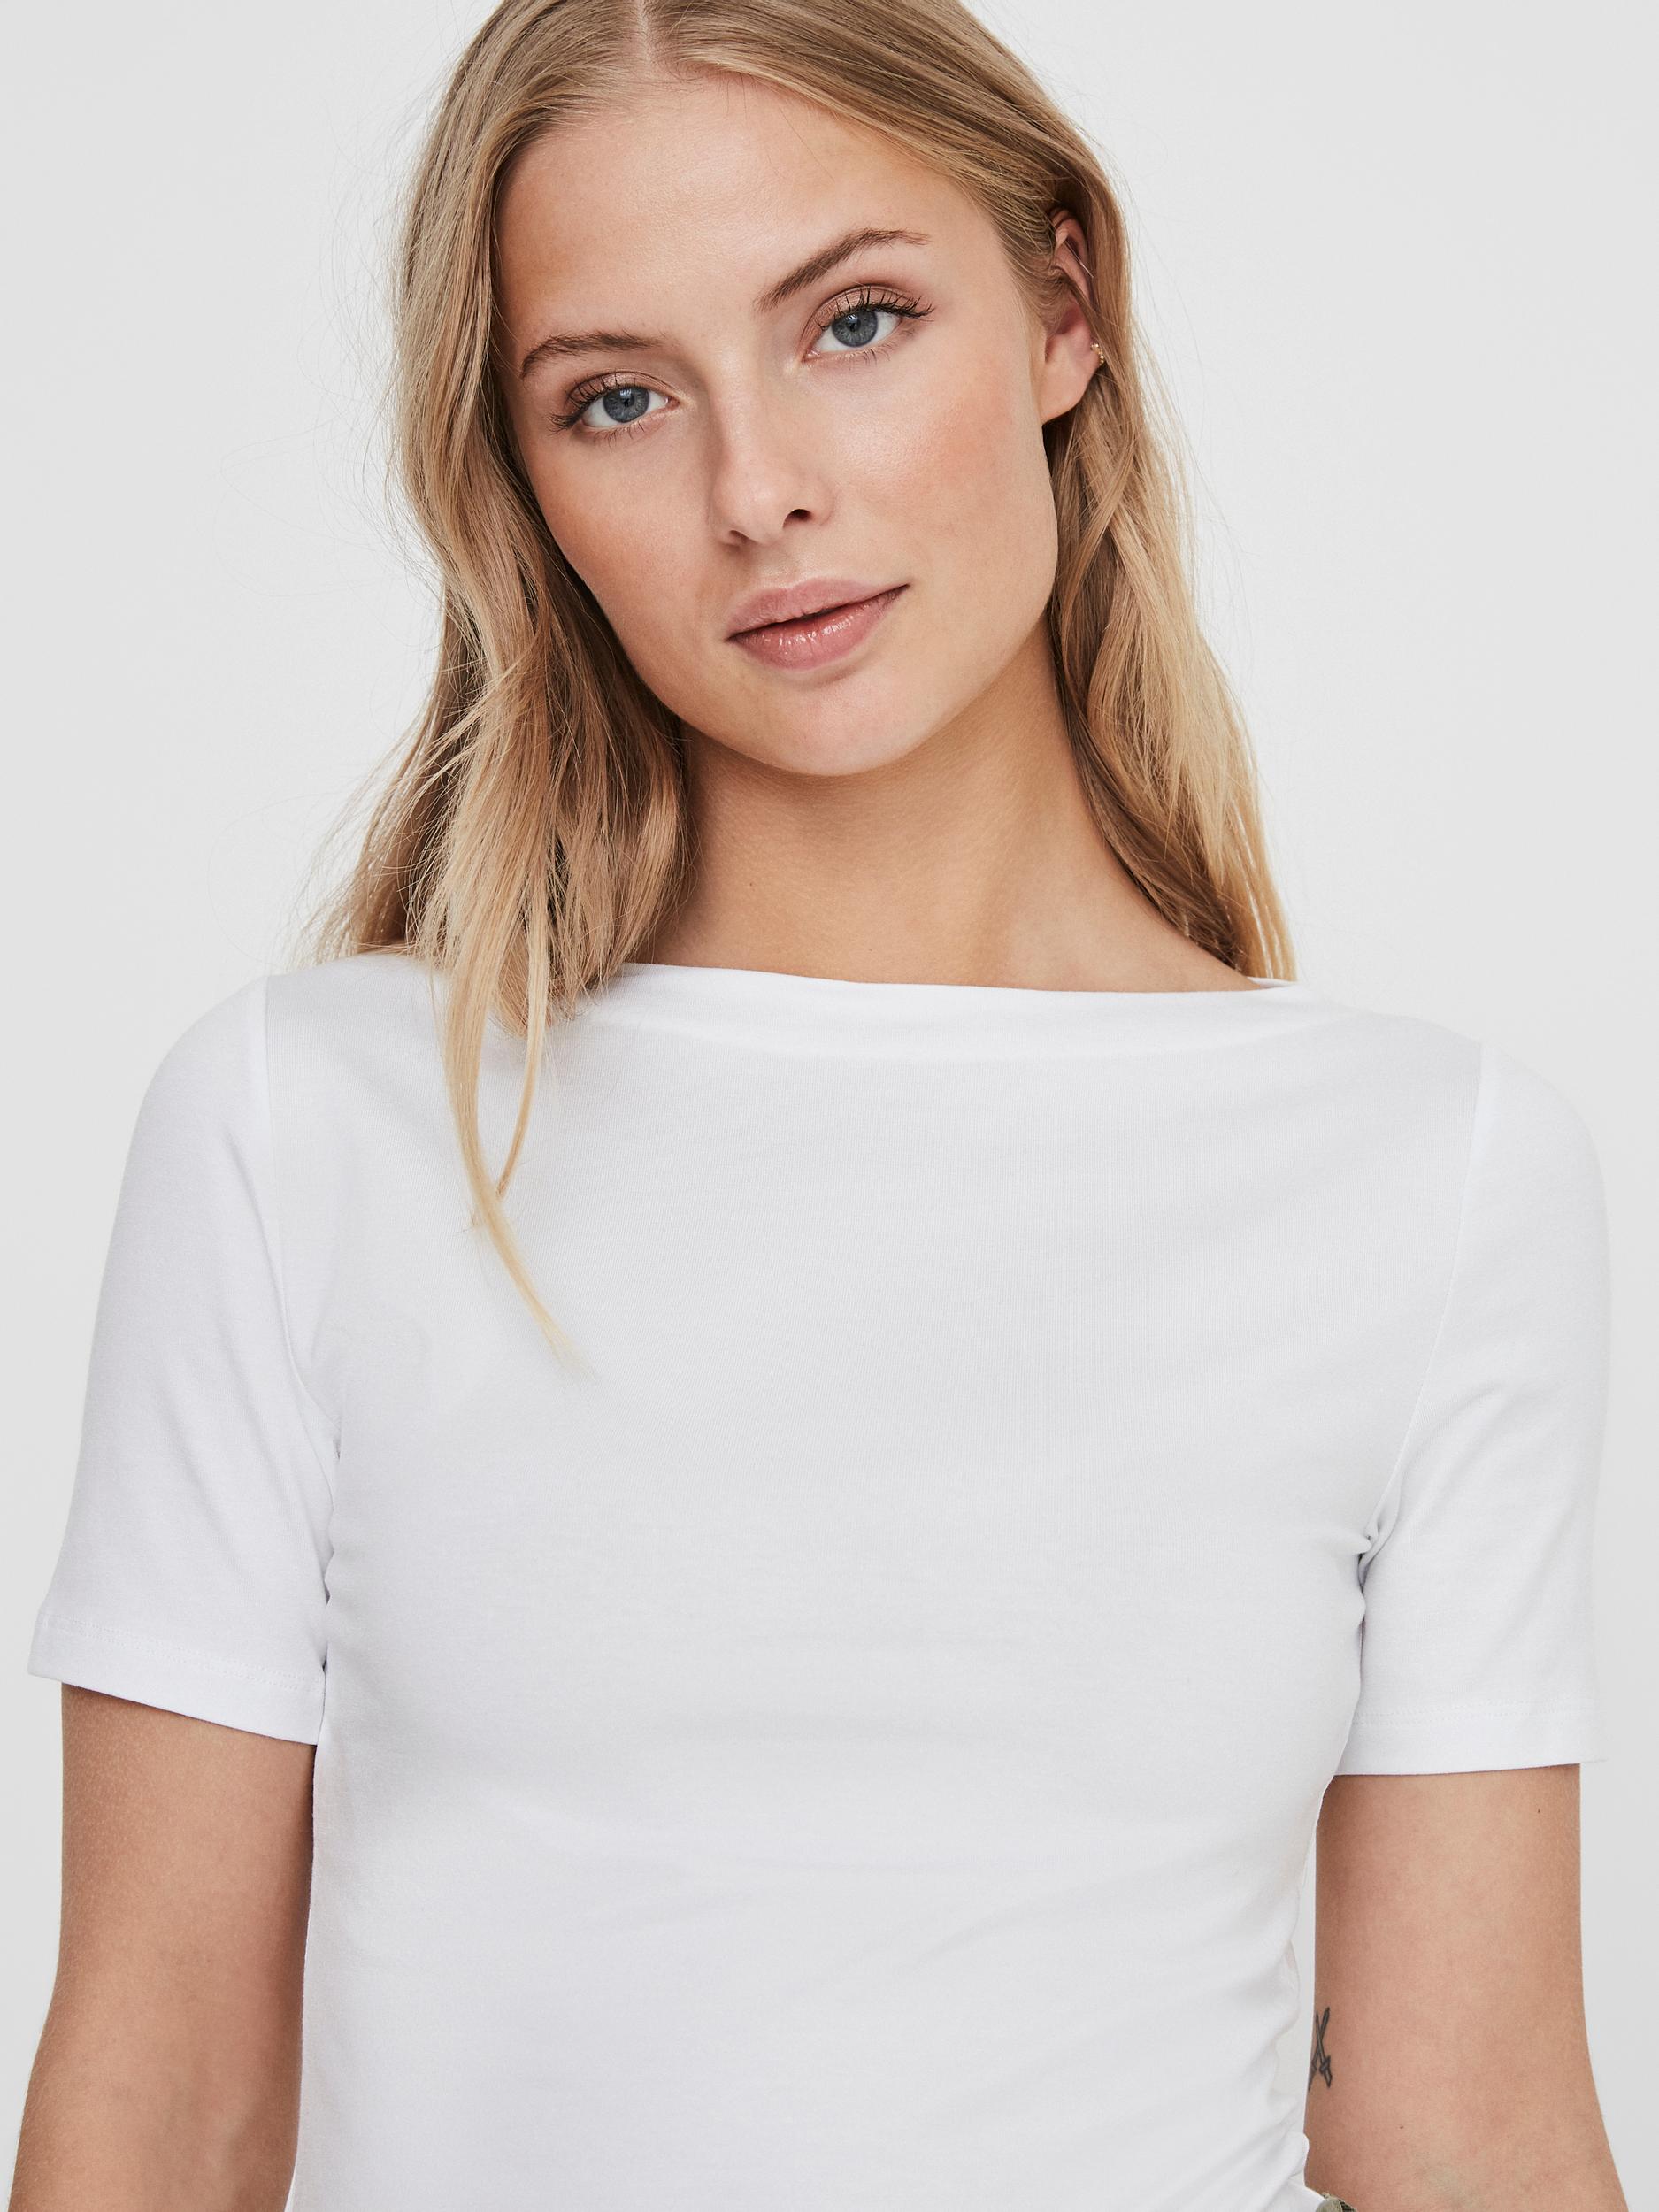 Panda T-shirt, Bright White, S